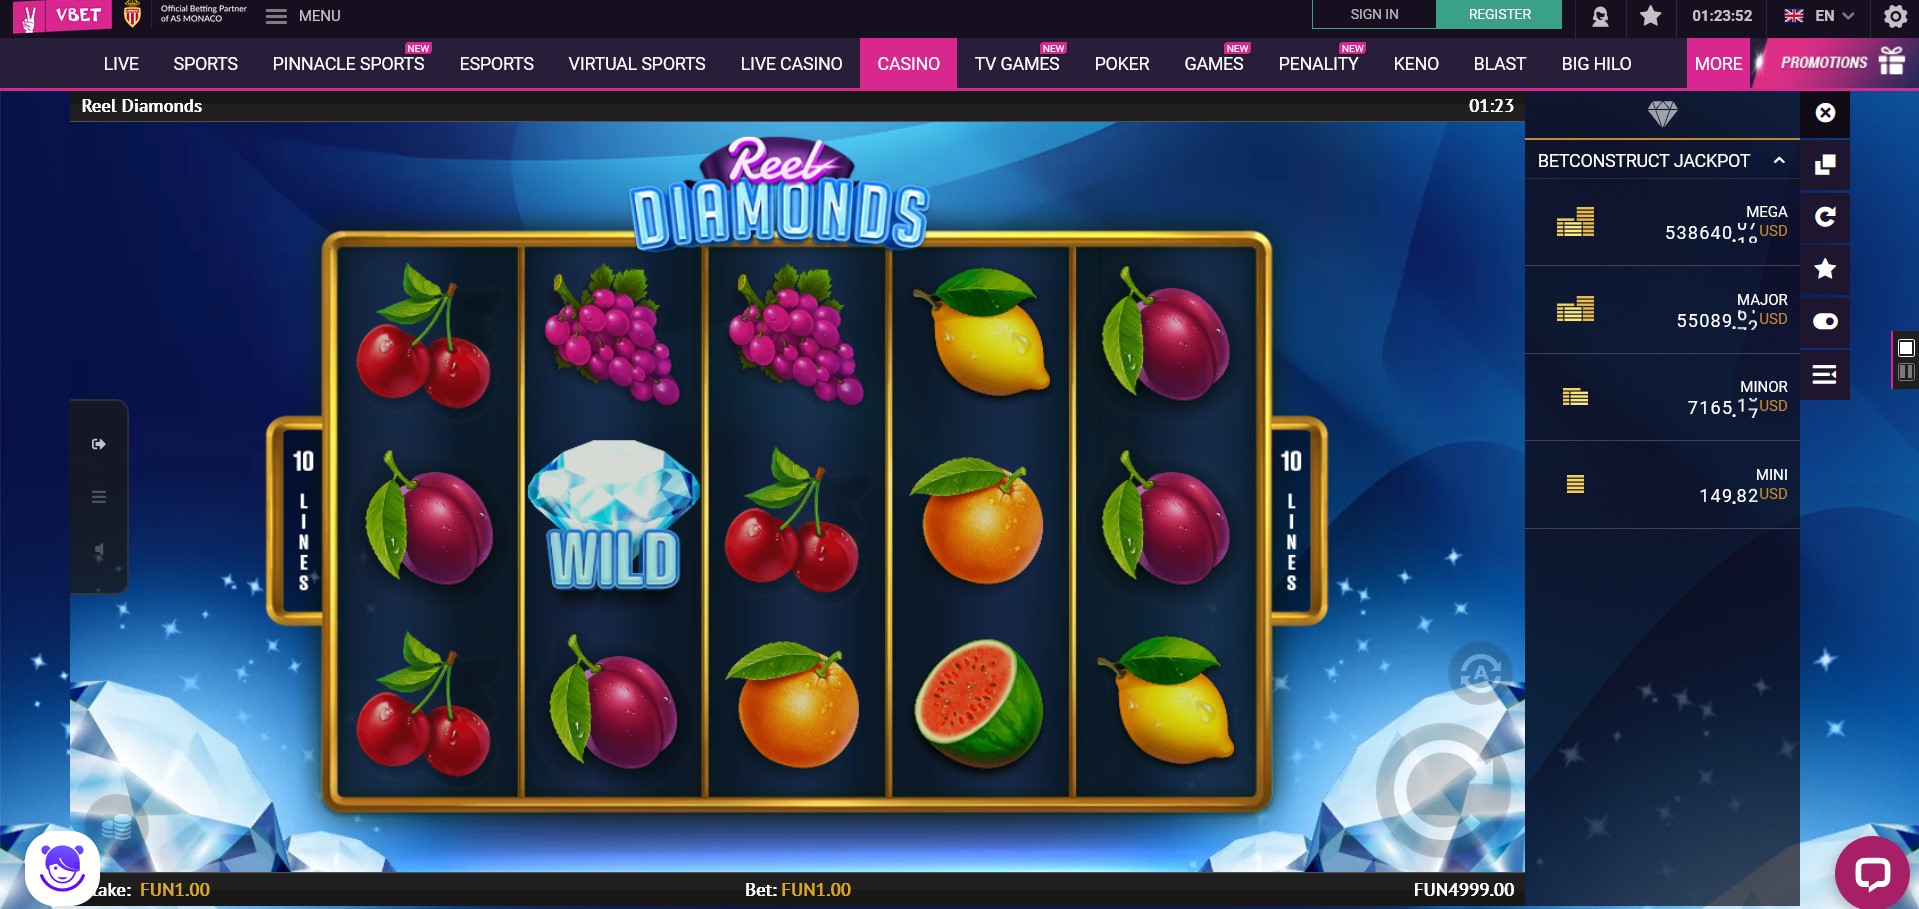 Vbet Casino Slot Games